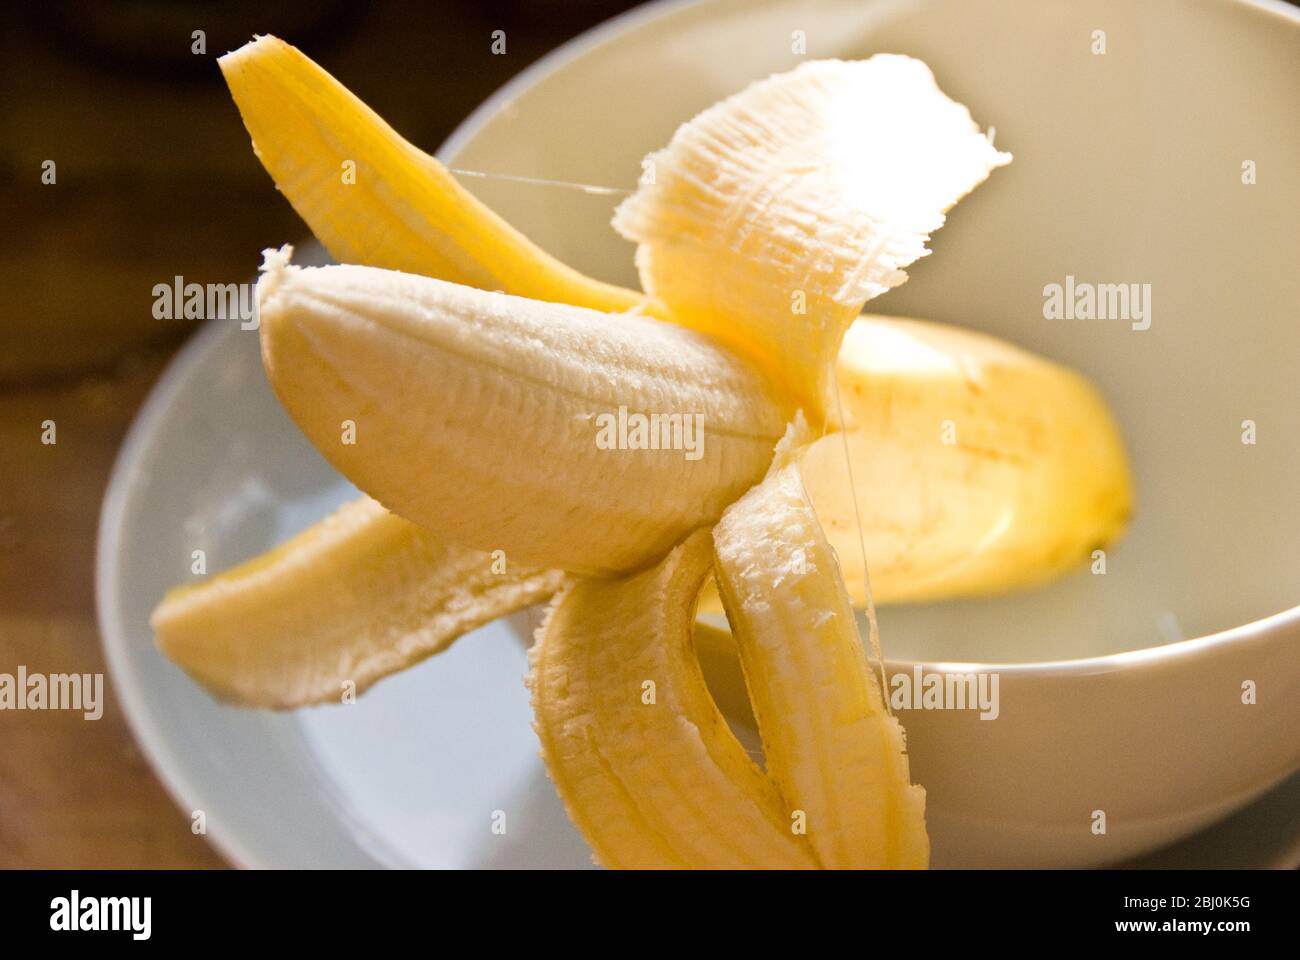 Halbgeschälte Banane in weißer Schale - Stockfoto